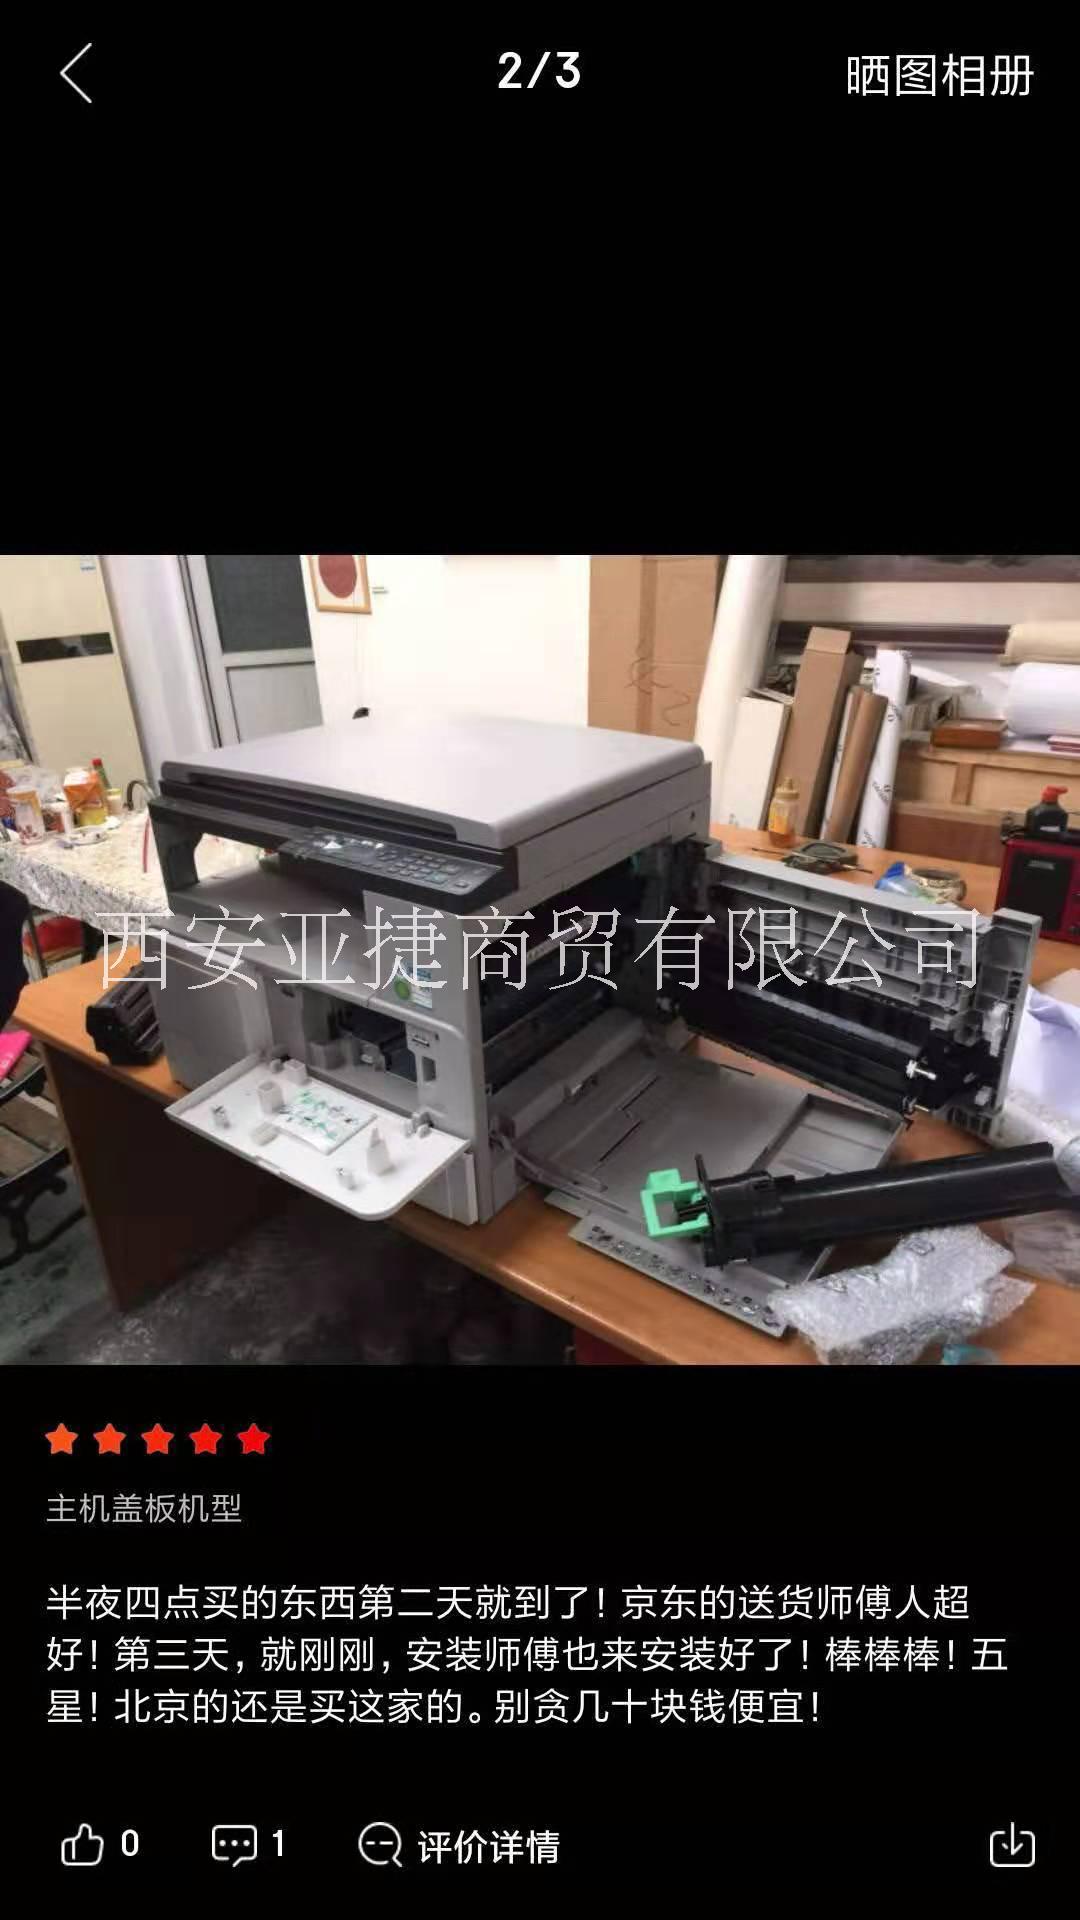 西安市理光复印机C2011SP特价销售厂家西安 理光复印机C2011SP特价销售